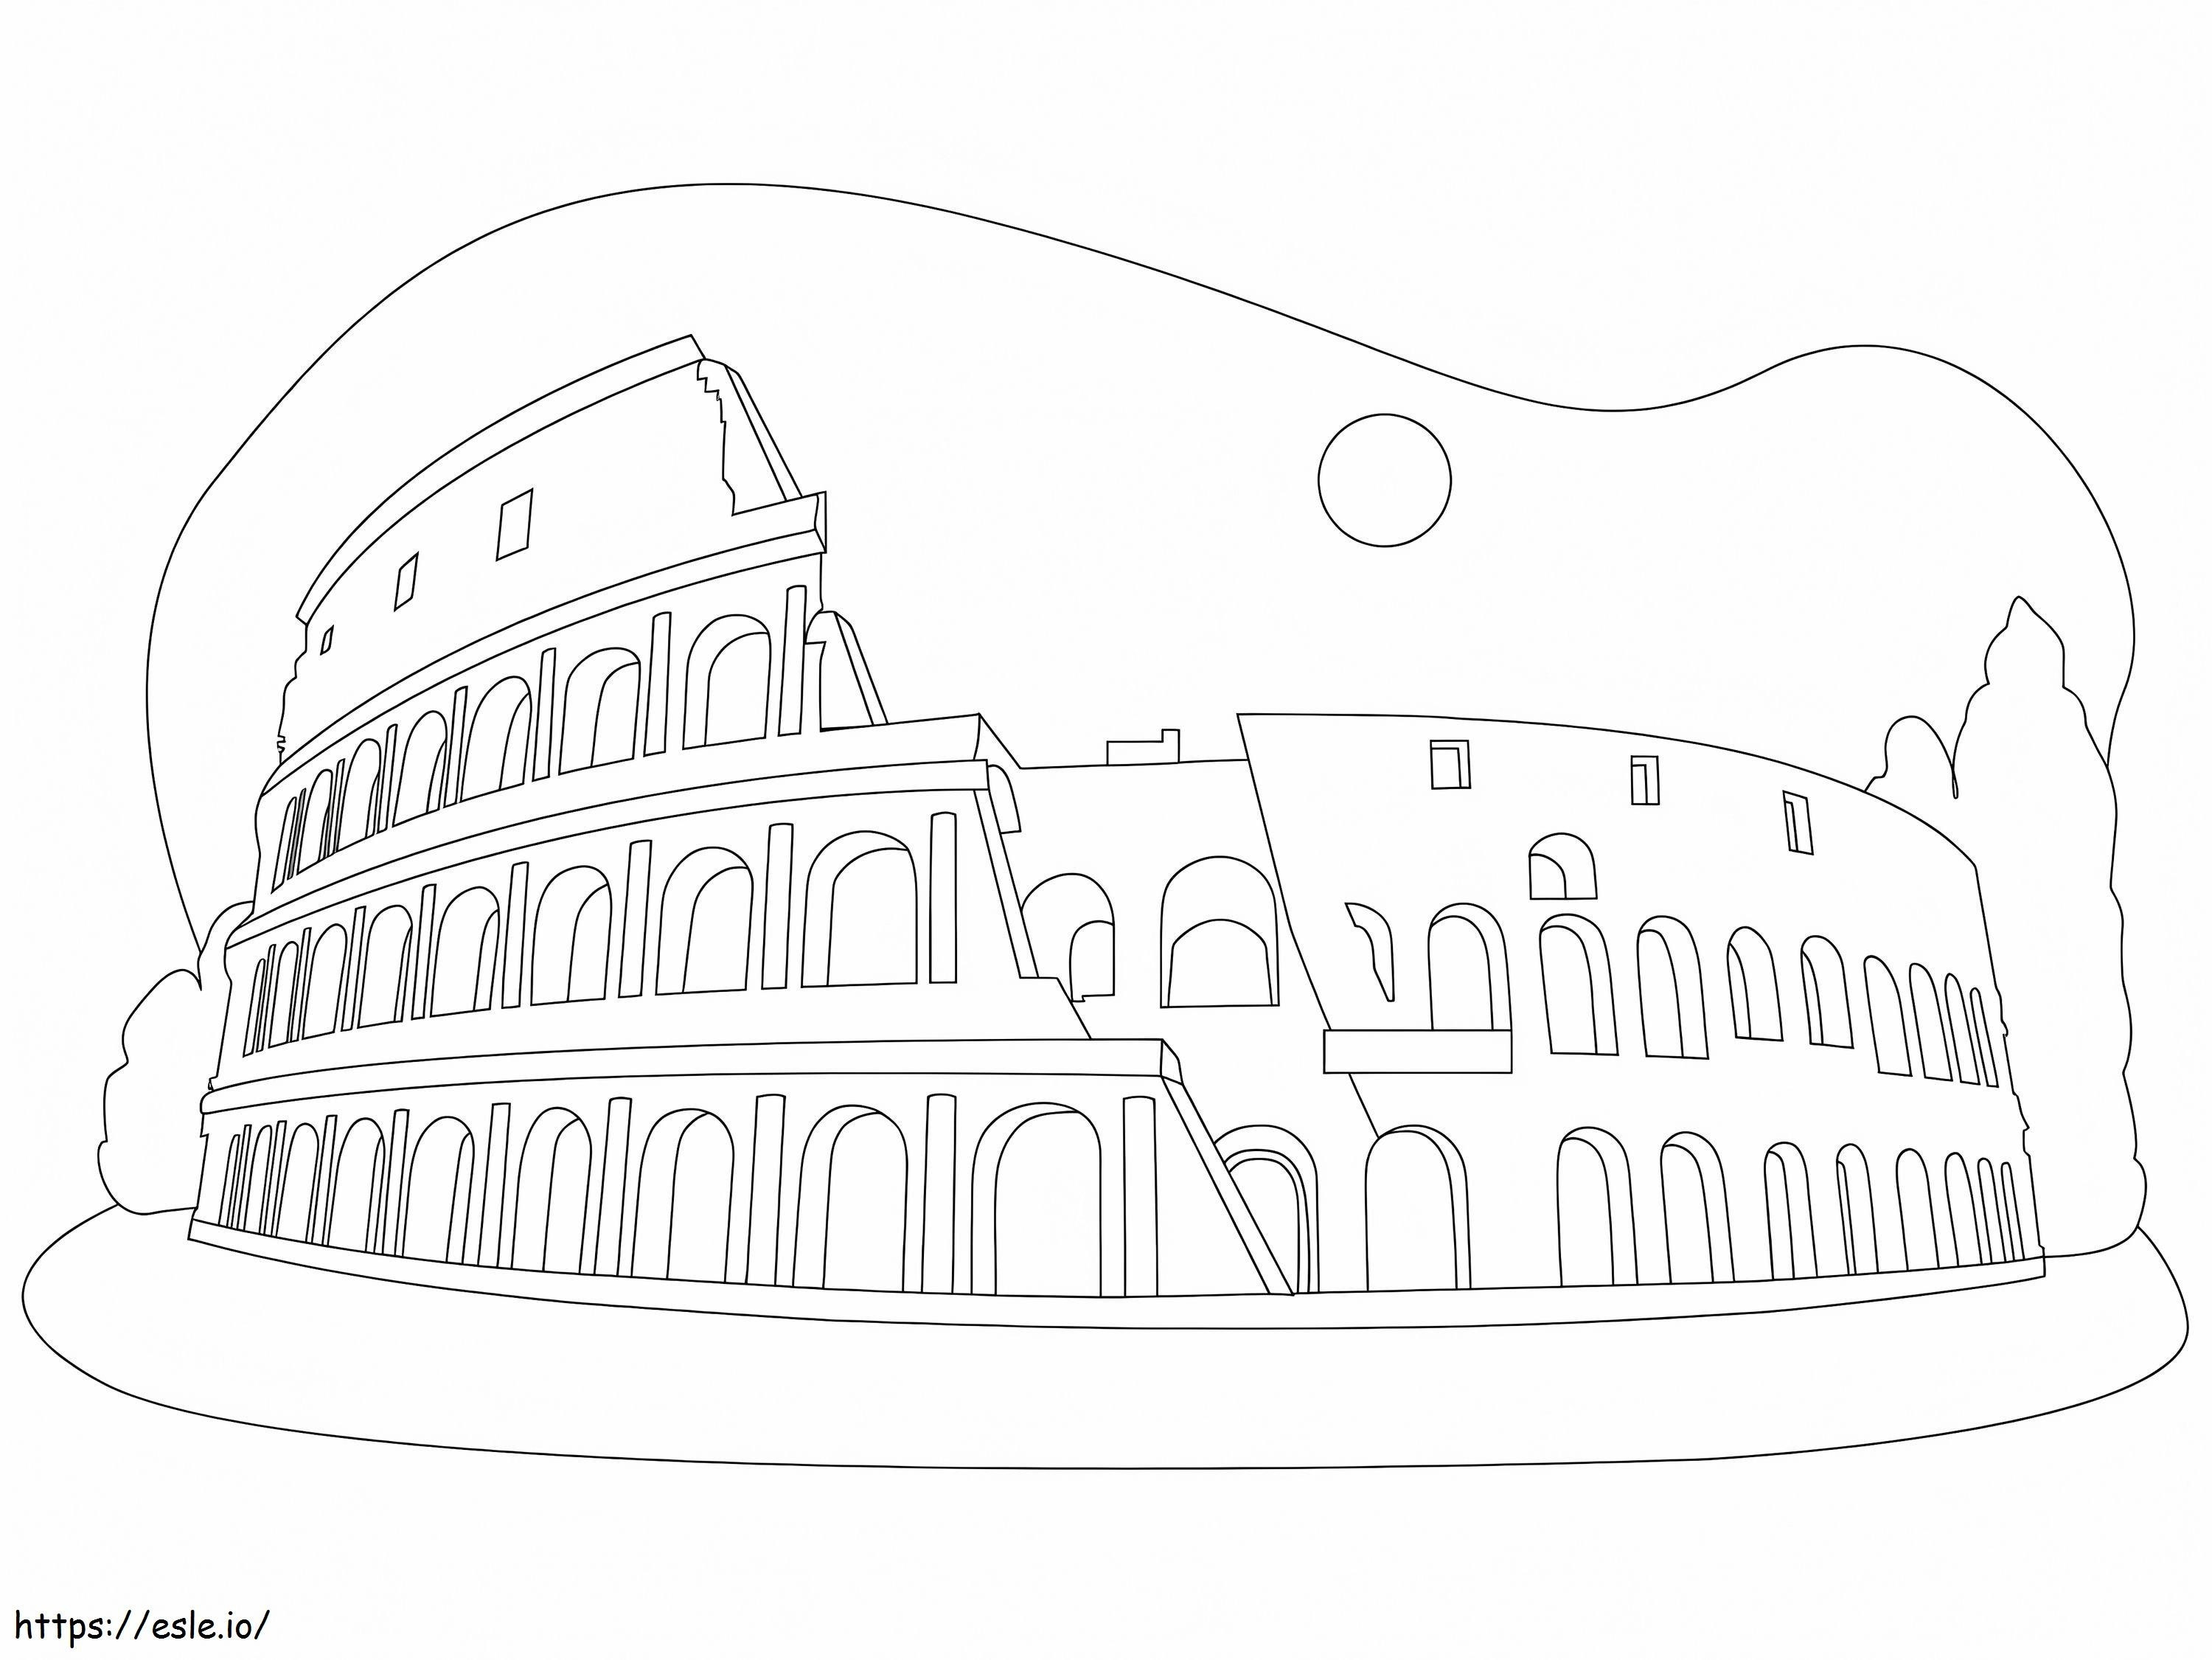 Het Colosseum kleurplaat kleurplaat